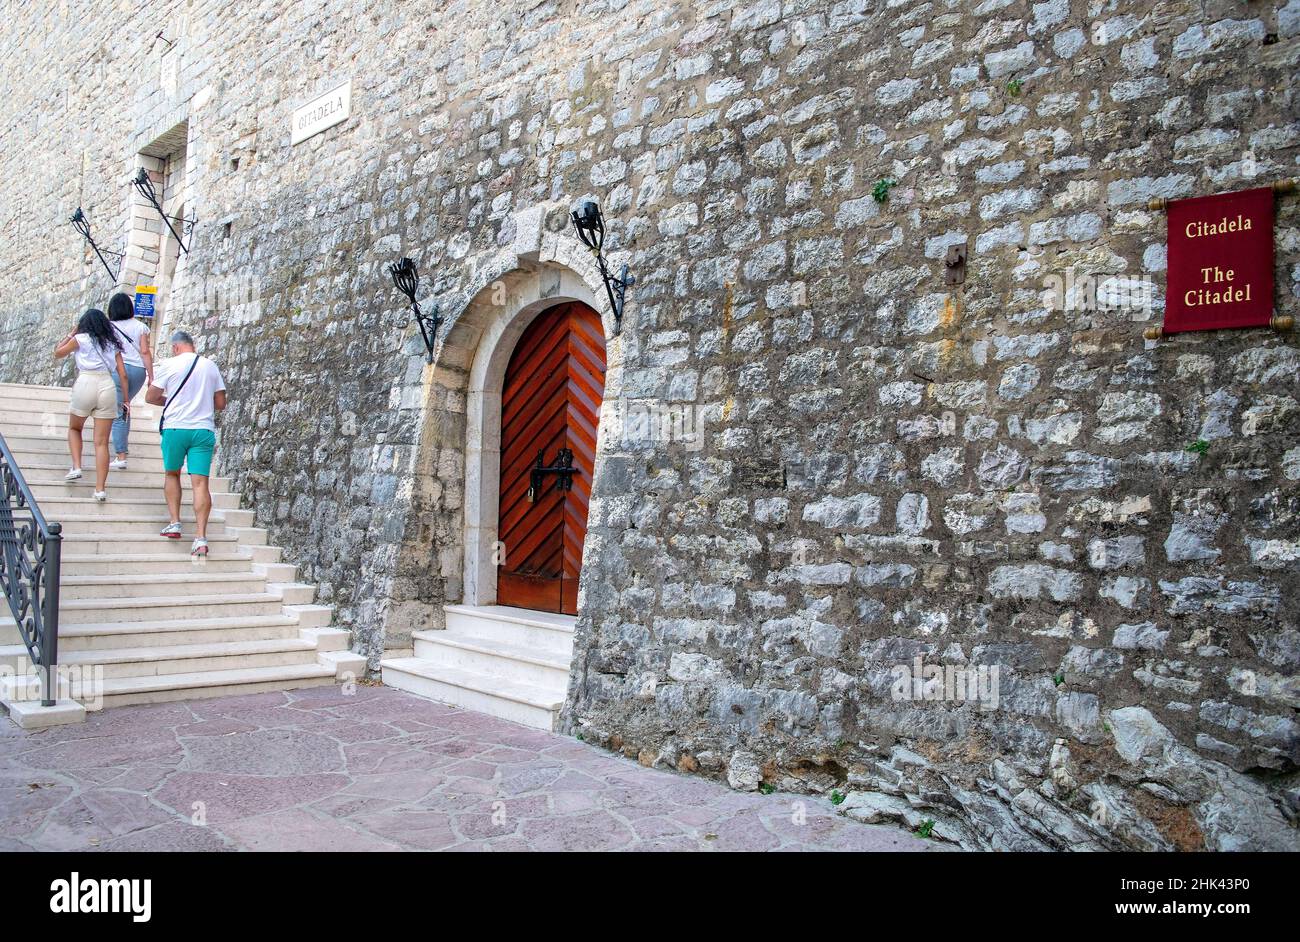 Monténégro - Budva : 8 septembre 2021 : vieille ville de Budva. Site du patrimoine avec des touristes. La plaque de la Citadelle sur le mur en pierre de la citadelle à côté de l'extrance Banque D'Images